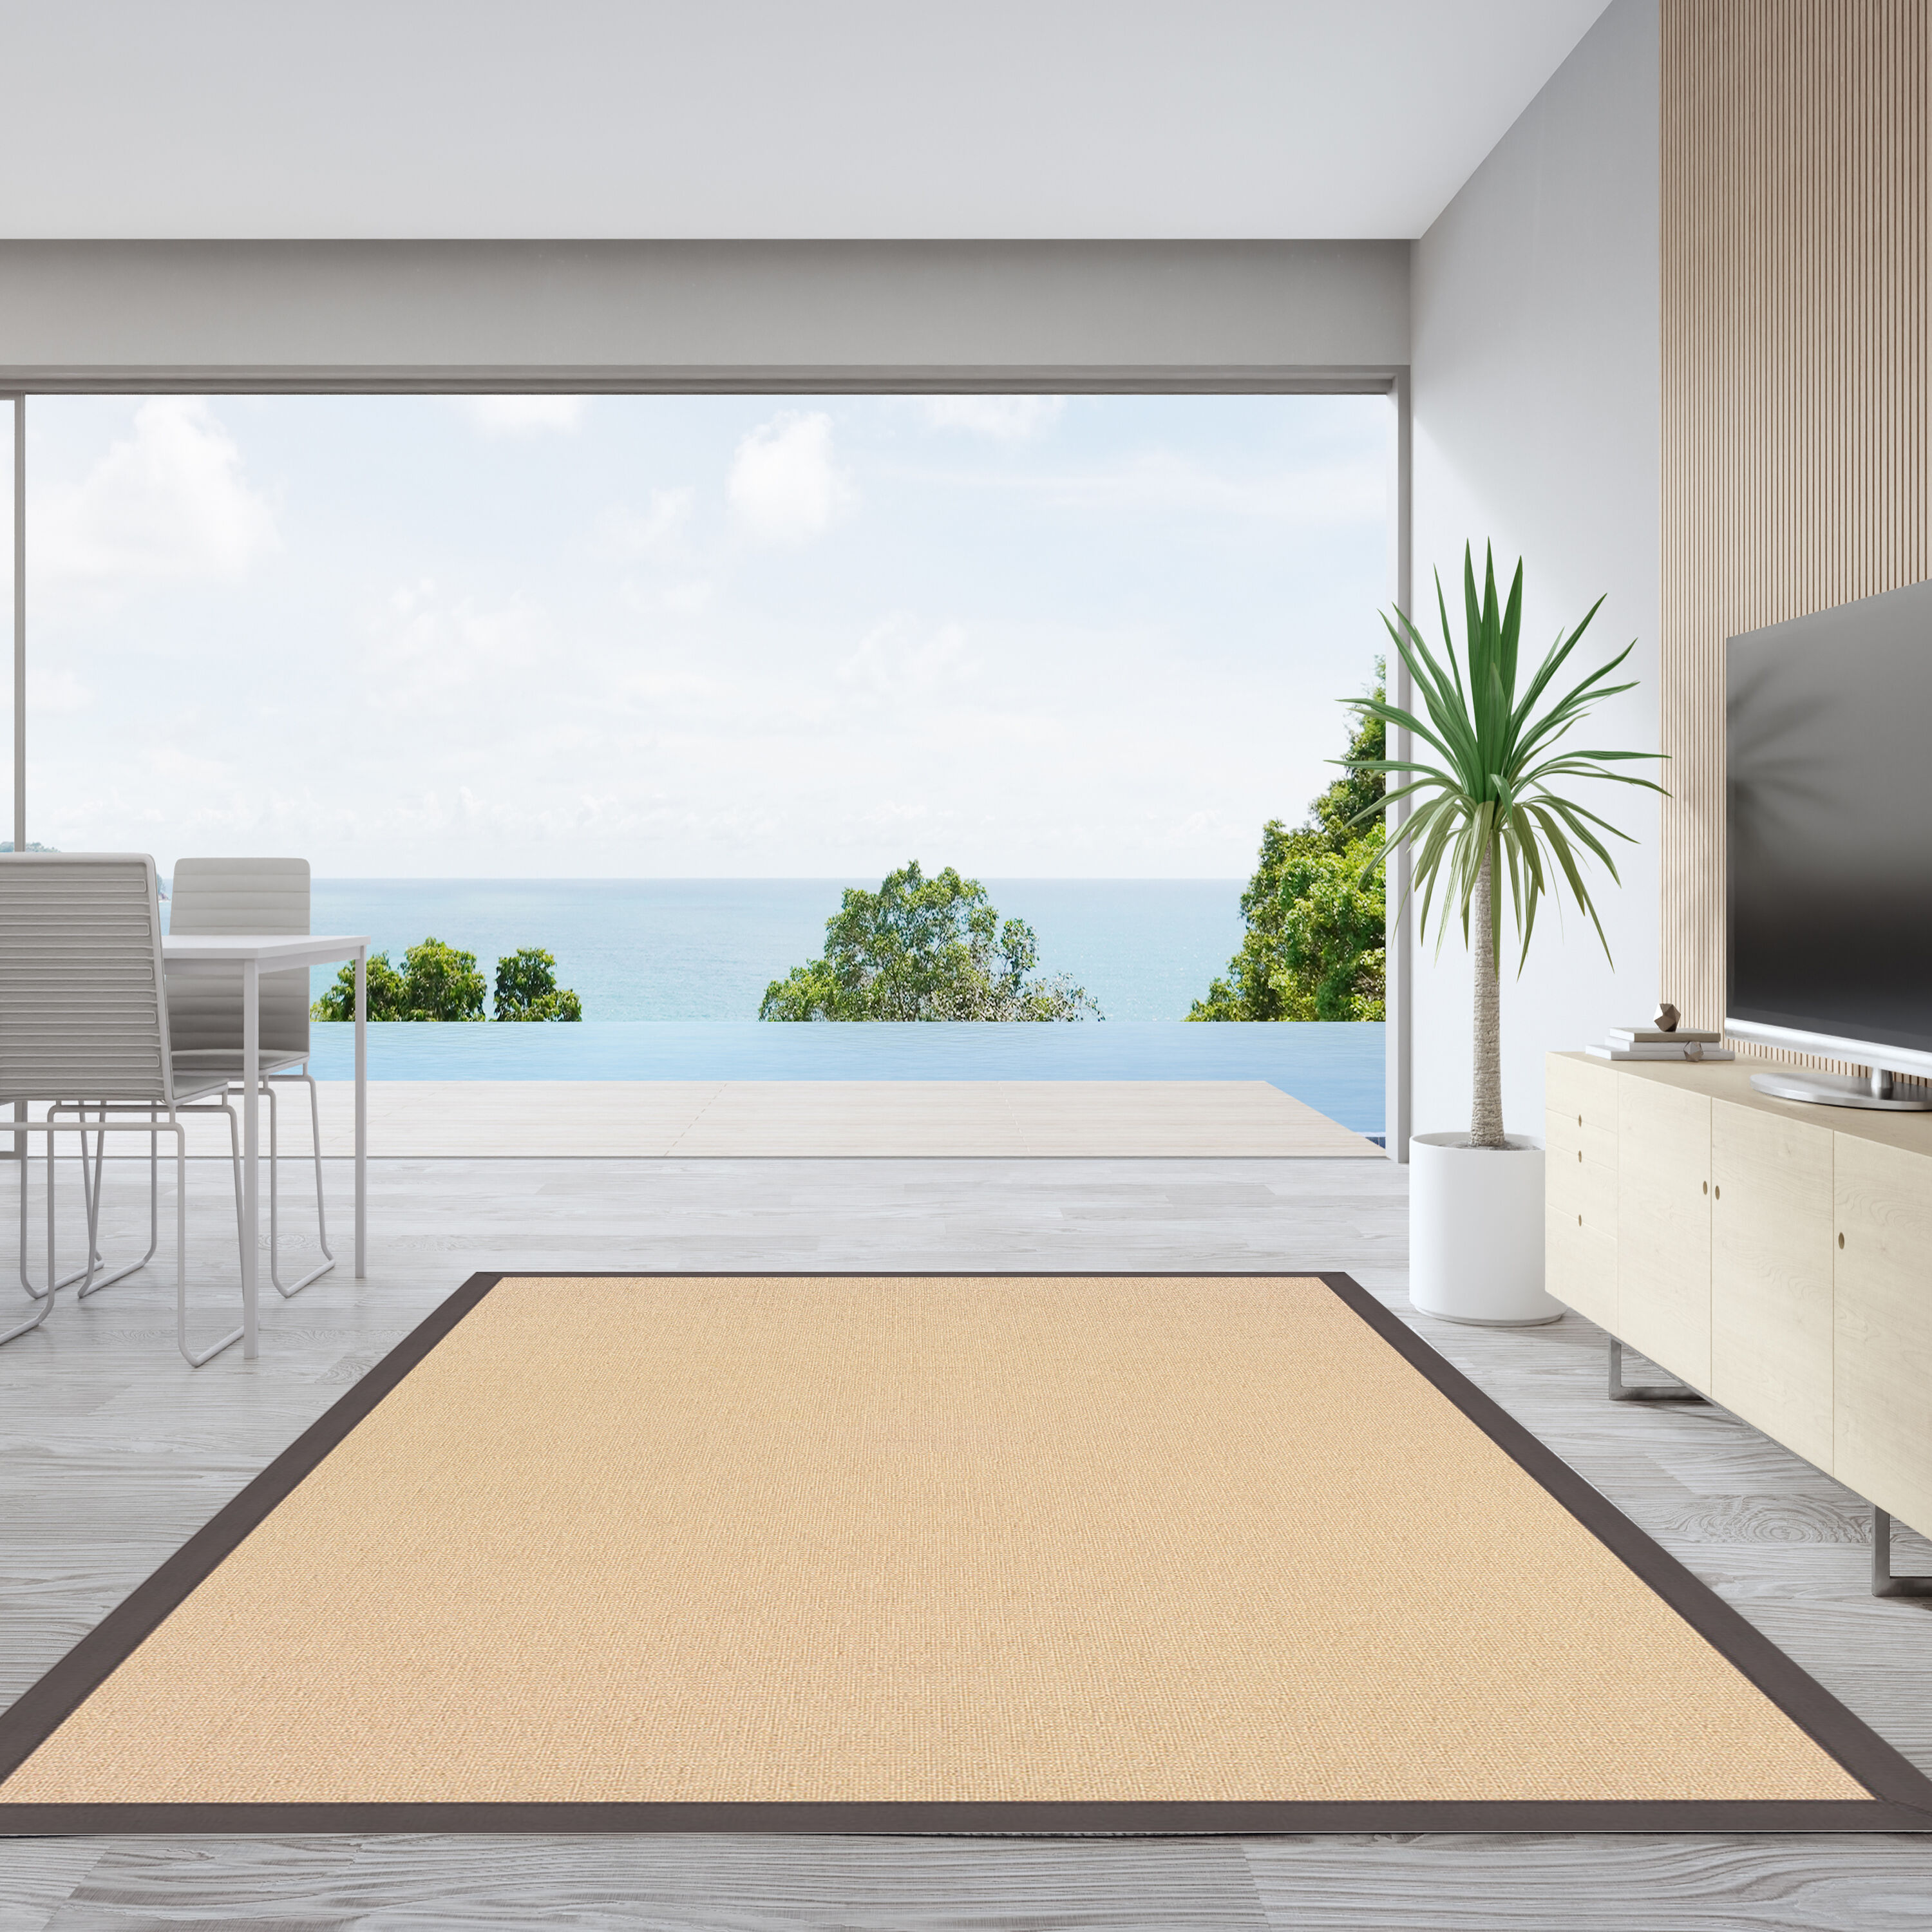 Concepts 2-Pack Striped Door Floor Mat - Indoor Outdoor Rug